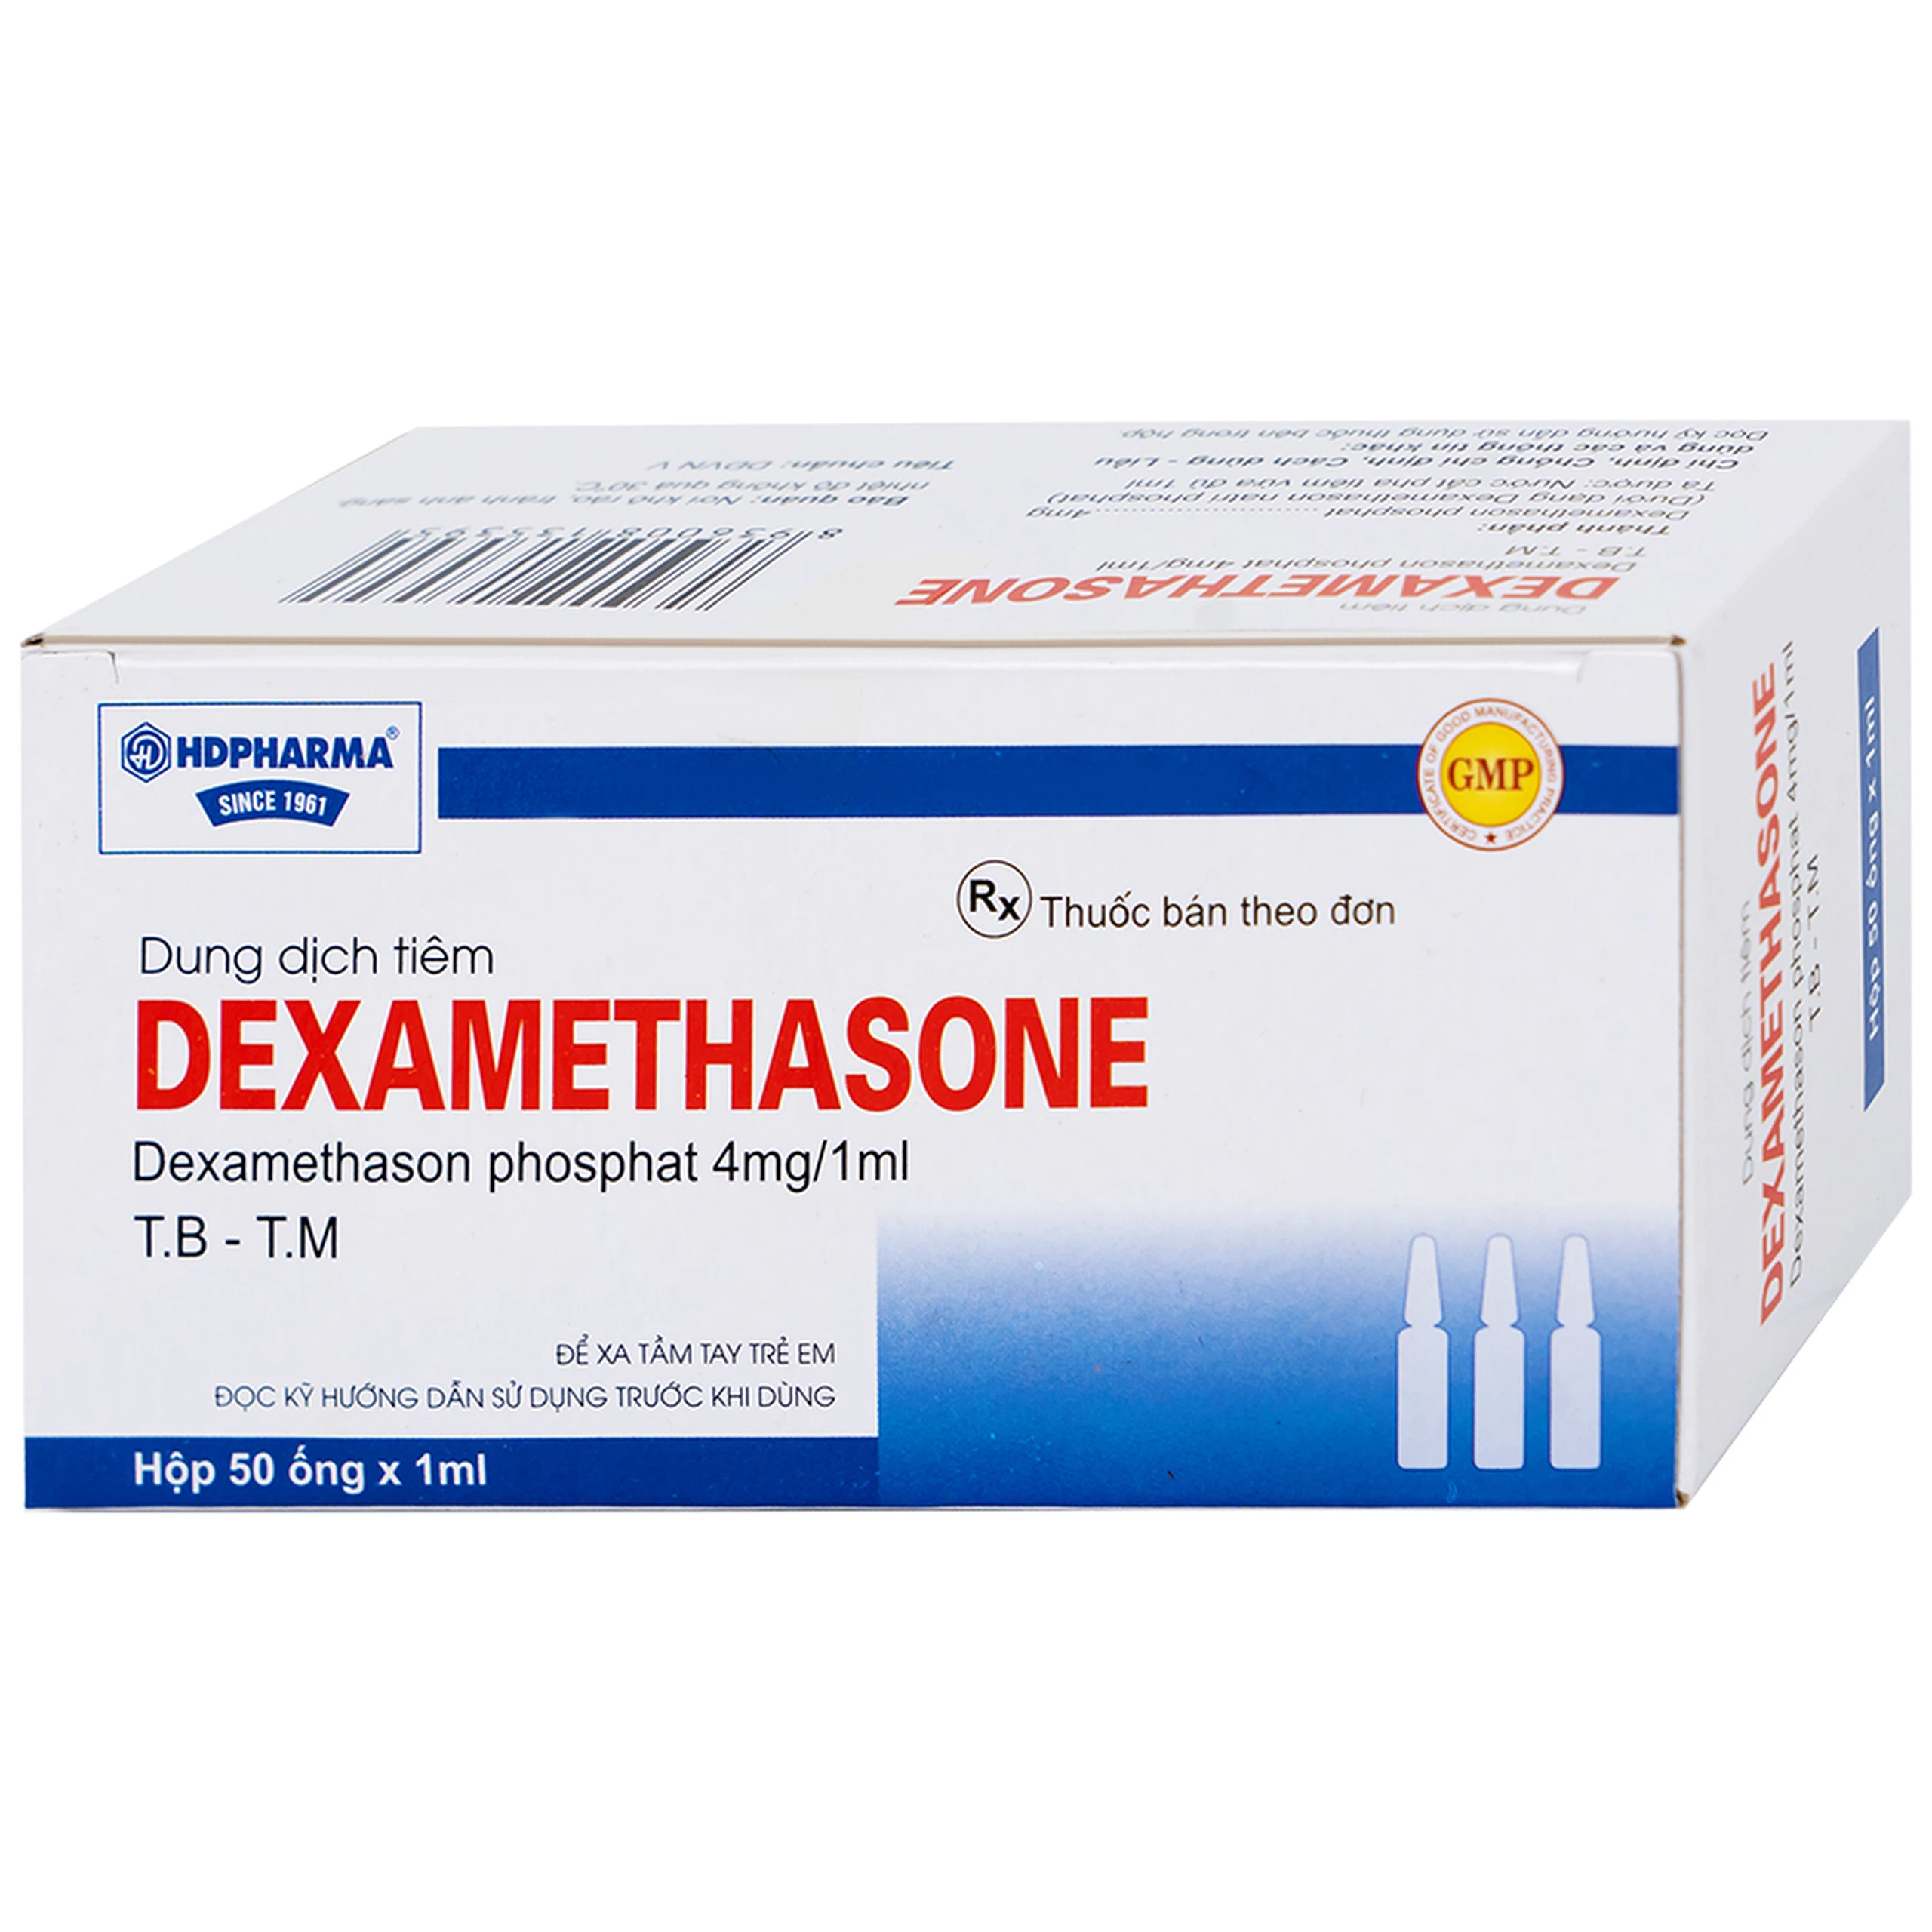 Dung dịch tiêm Dexamethasone 4mg/1ml điều trị trạng thái hen, bệnh dị ứng nặng, phản ứng sau truyền máu (50 ống)